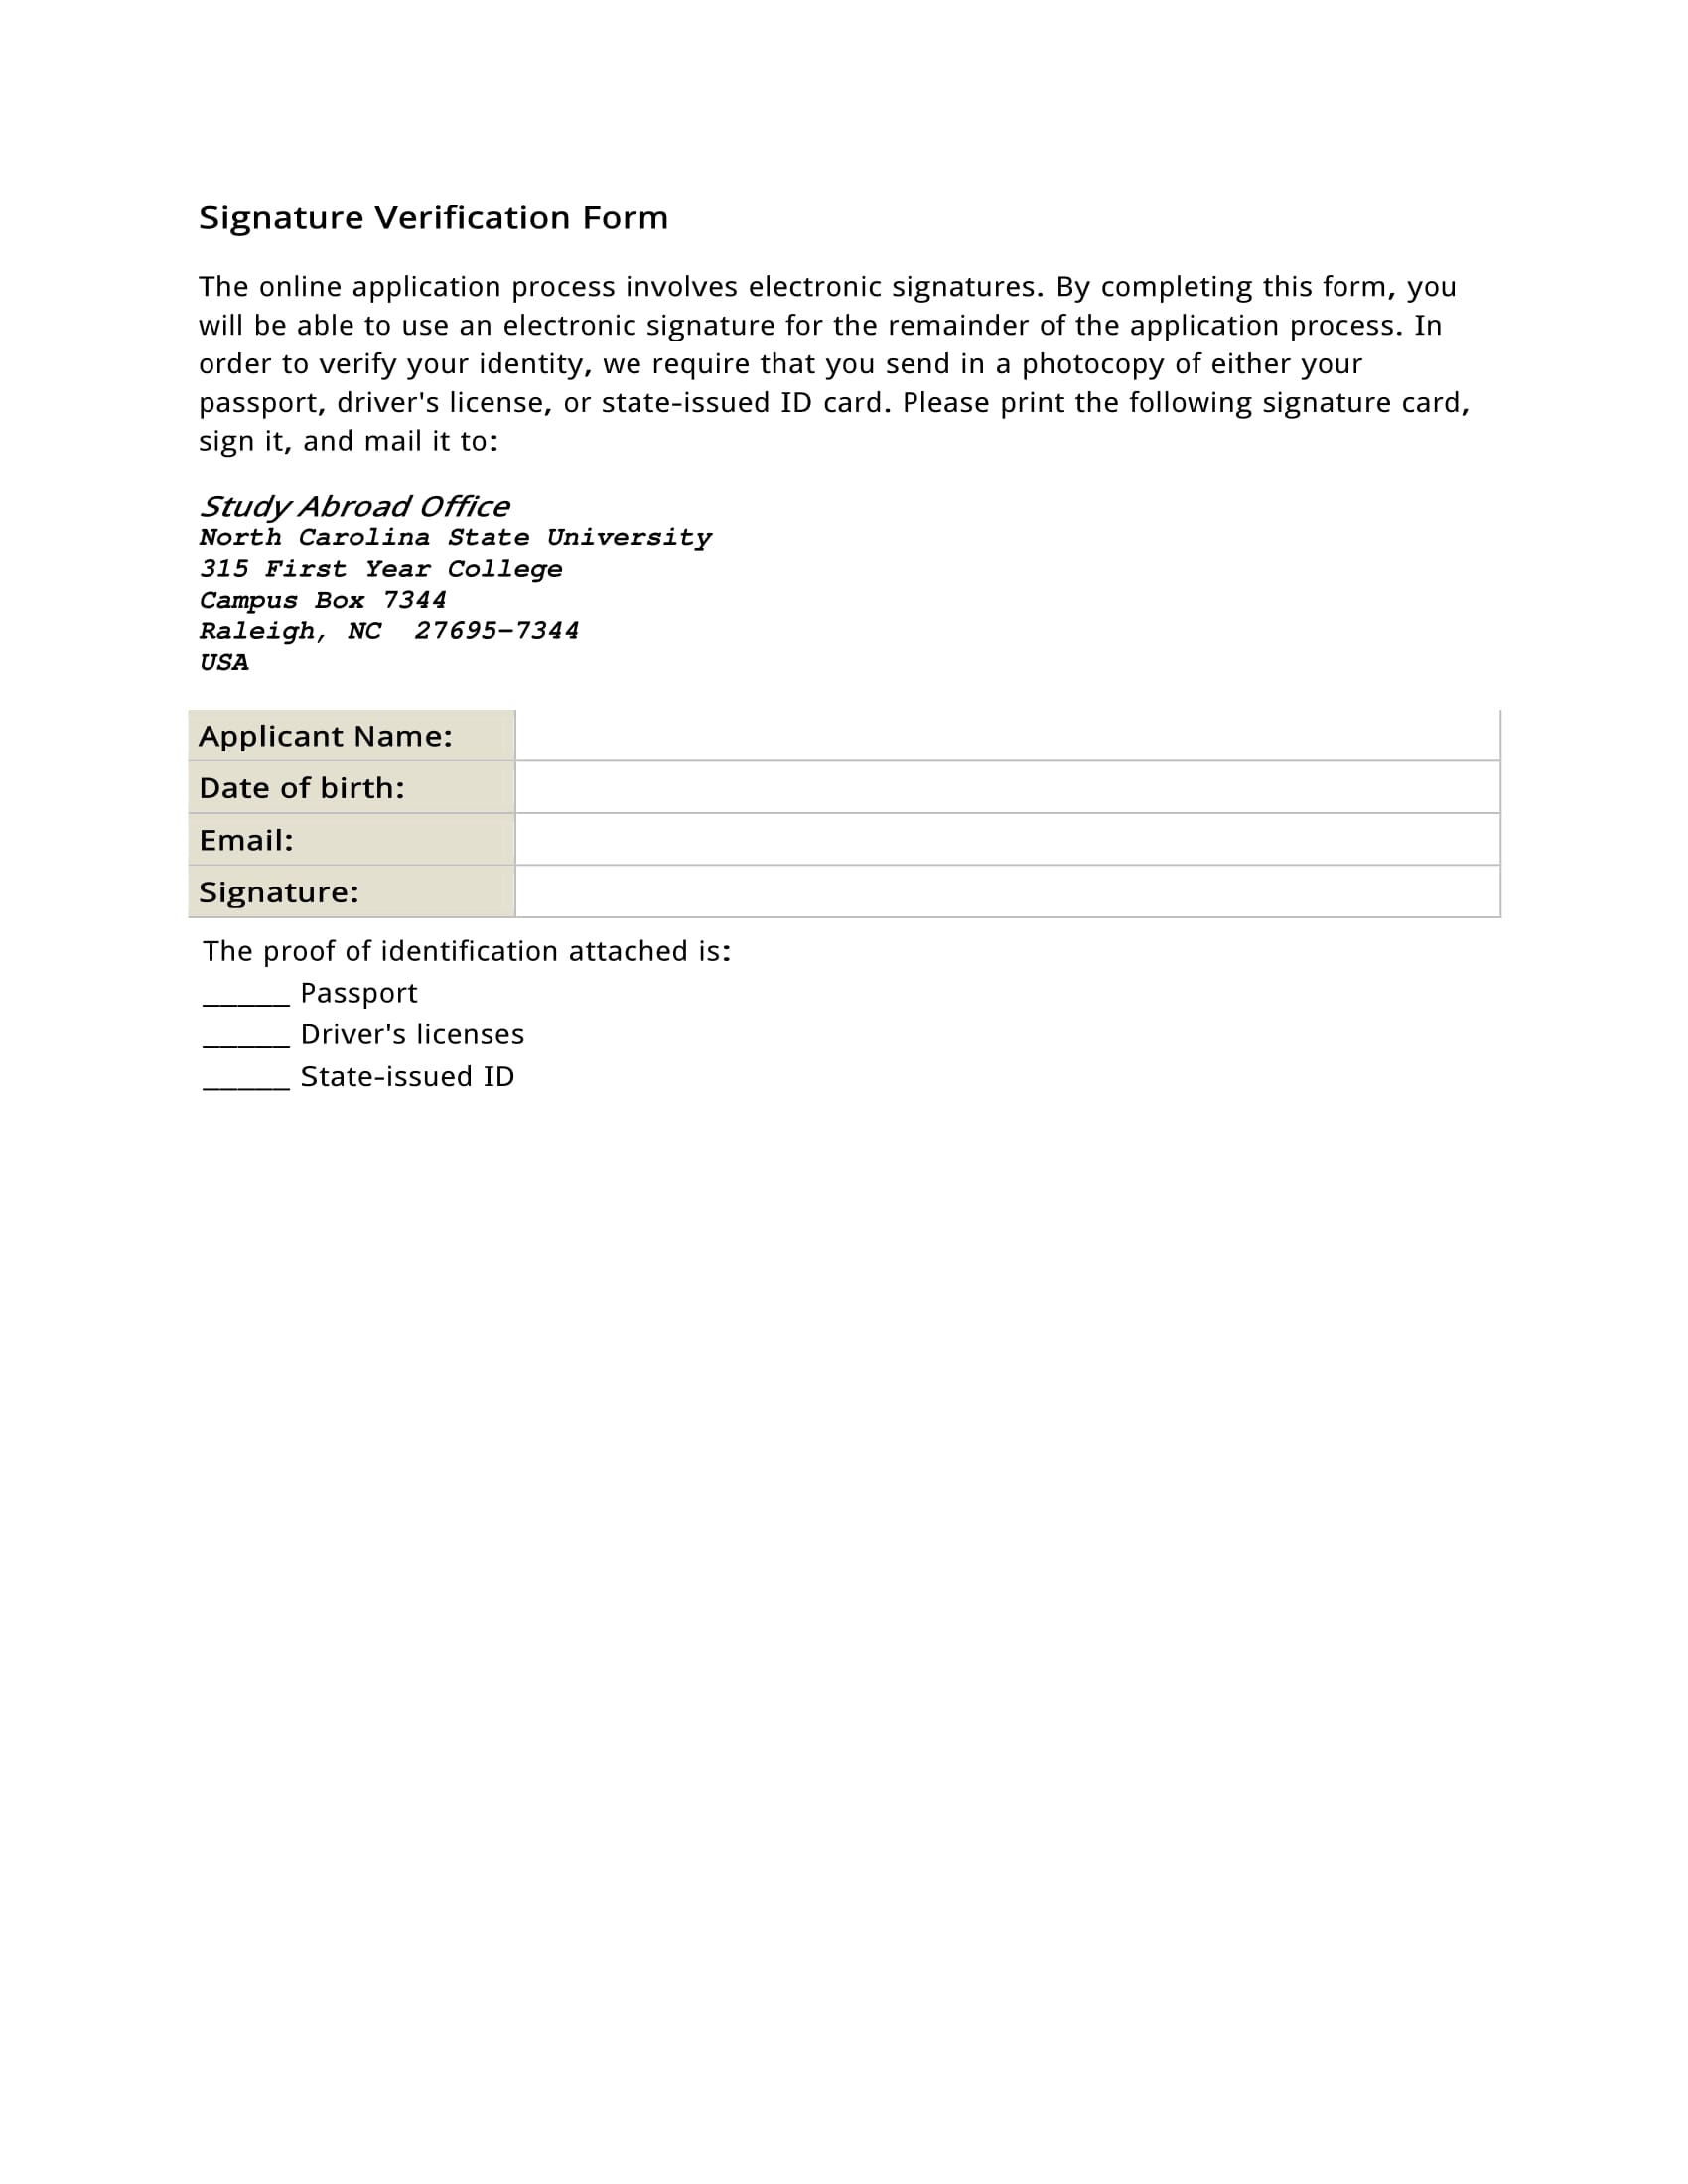 Bank signature verification letter format pdf